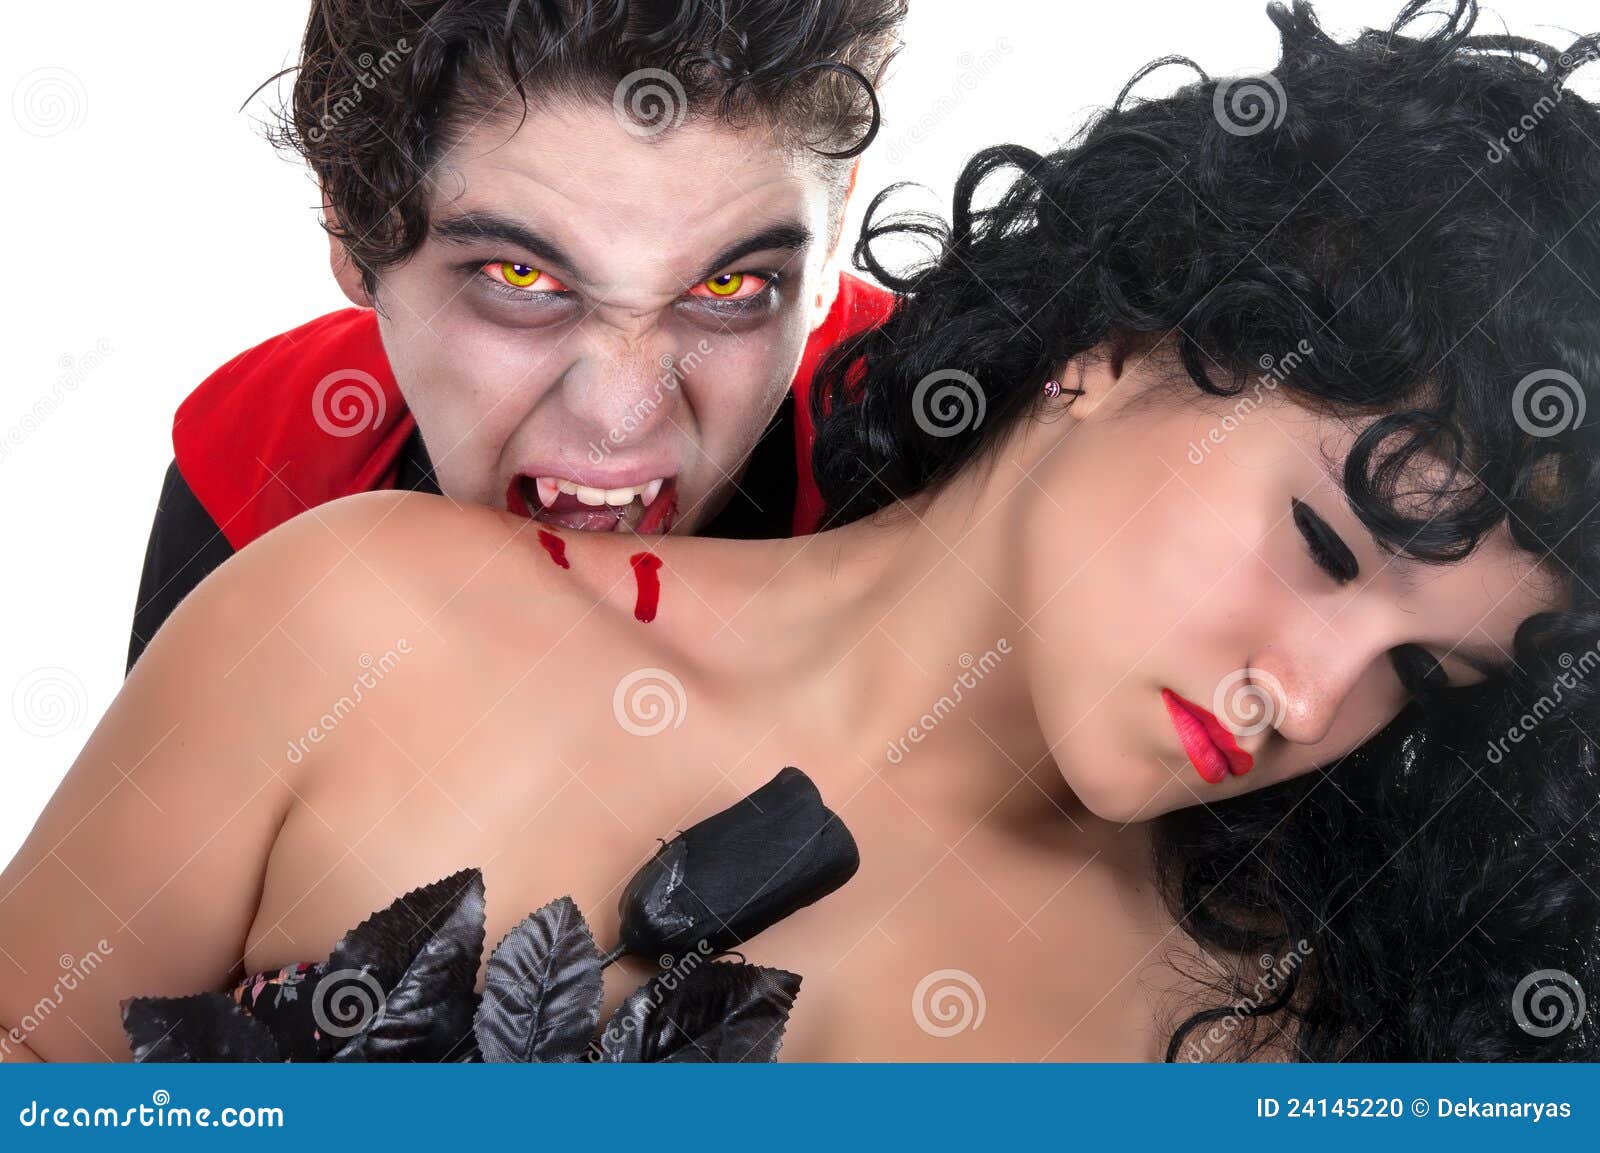 голая вампирша кусает девушку фото 61